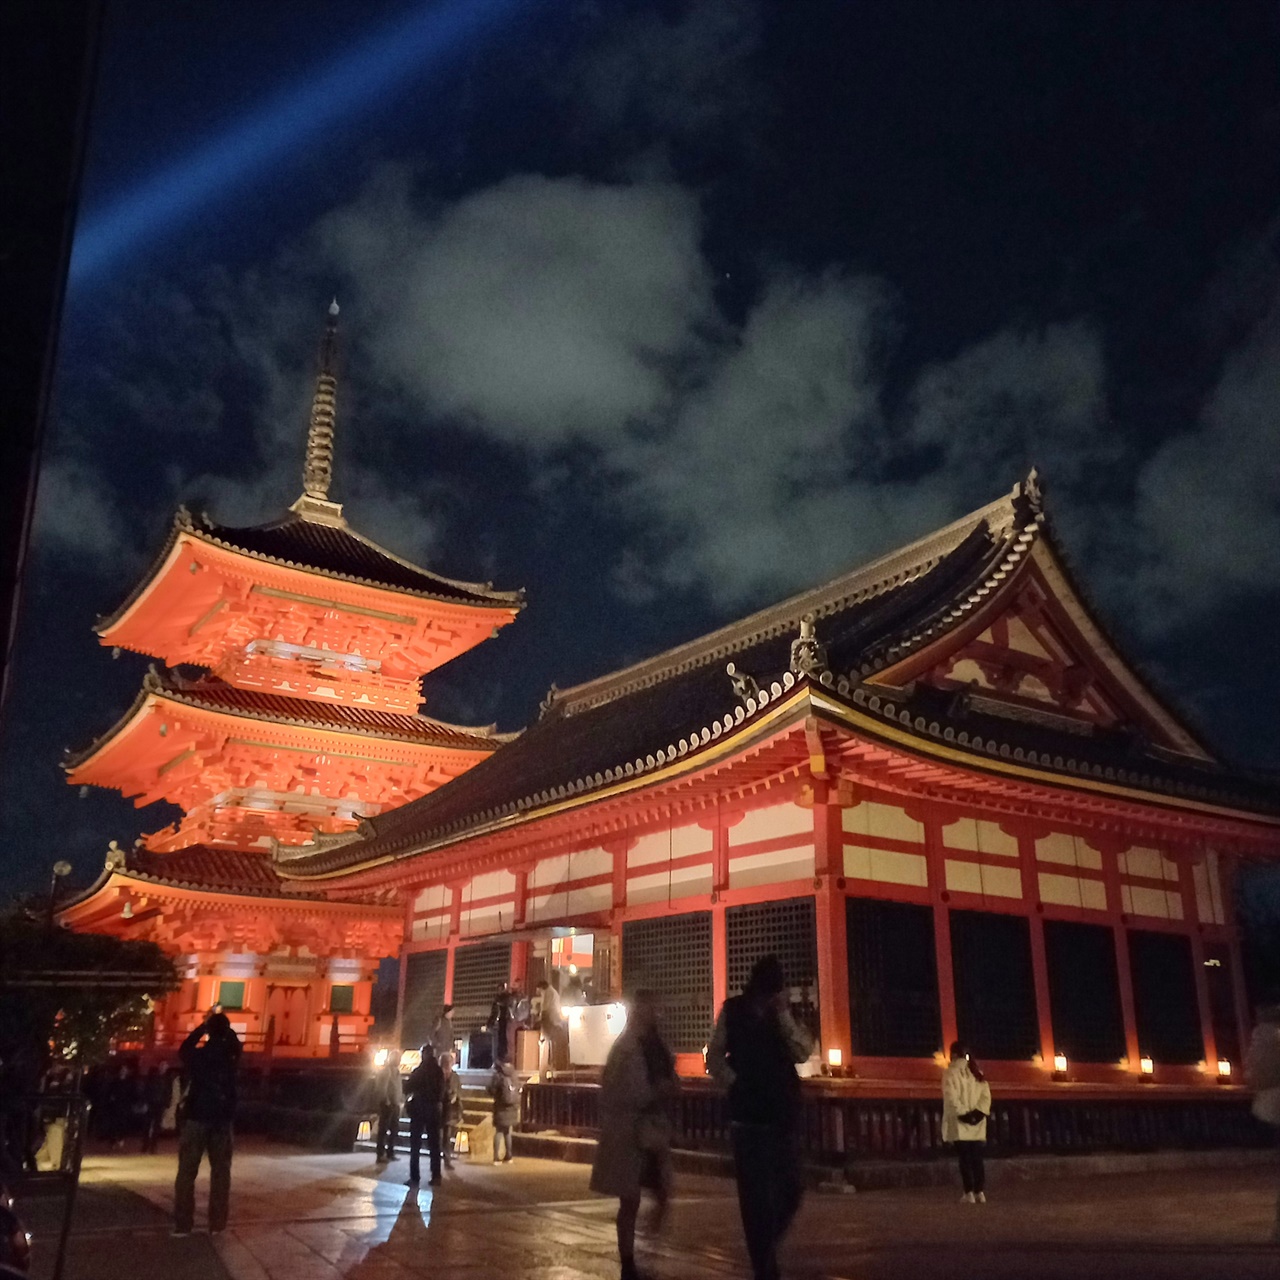 오사카 인근 교토의 대표적 관광지 중 하나인 청수사의 밤 풍경.
